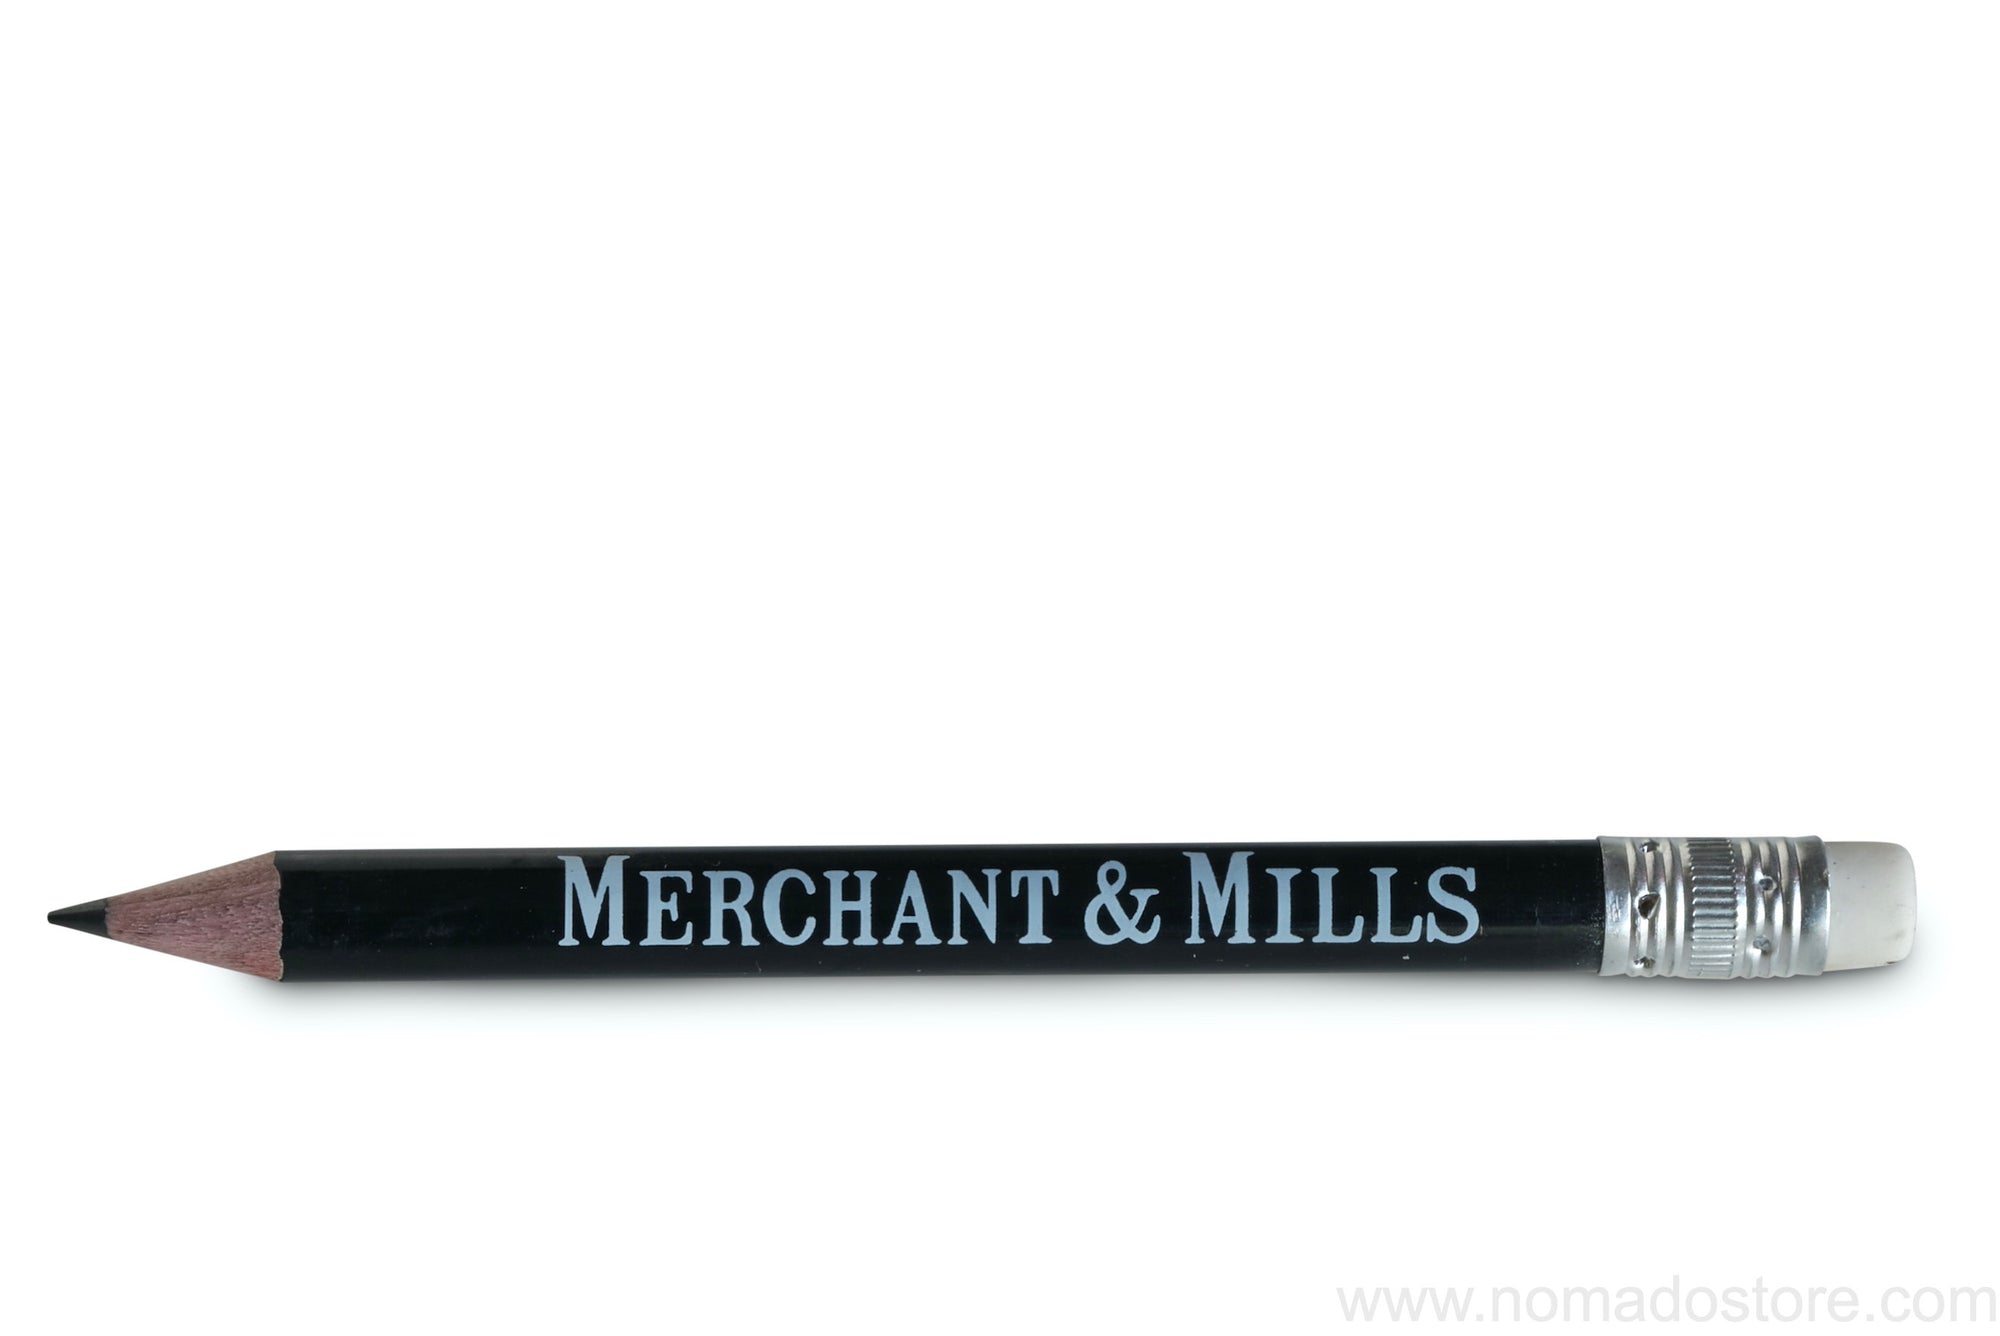 Merchant & Mills The Pencil